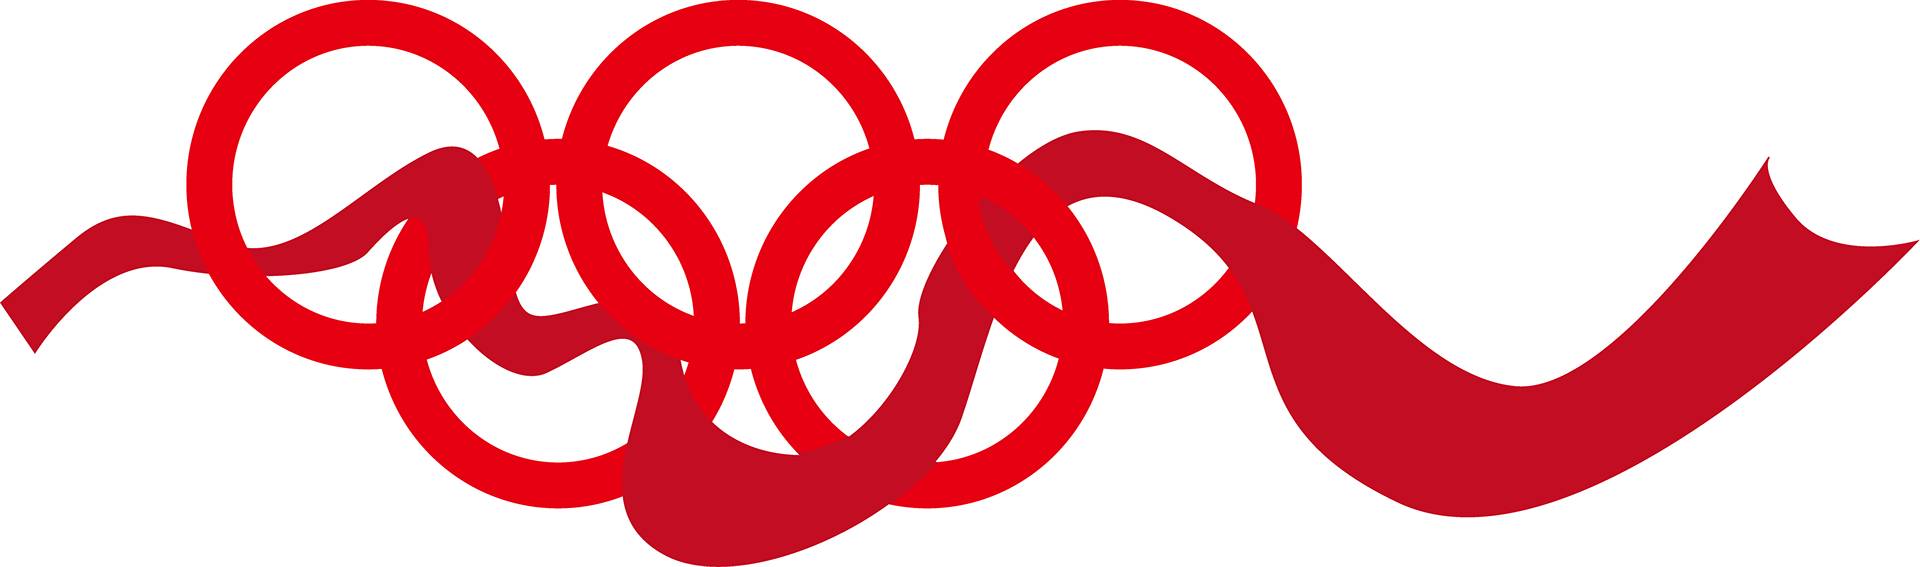 可口可乐遇到2020东京奥运会,红色能玩出多厉害的创意!